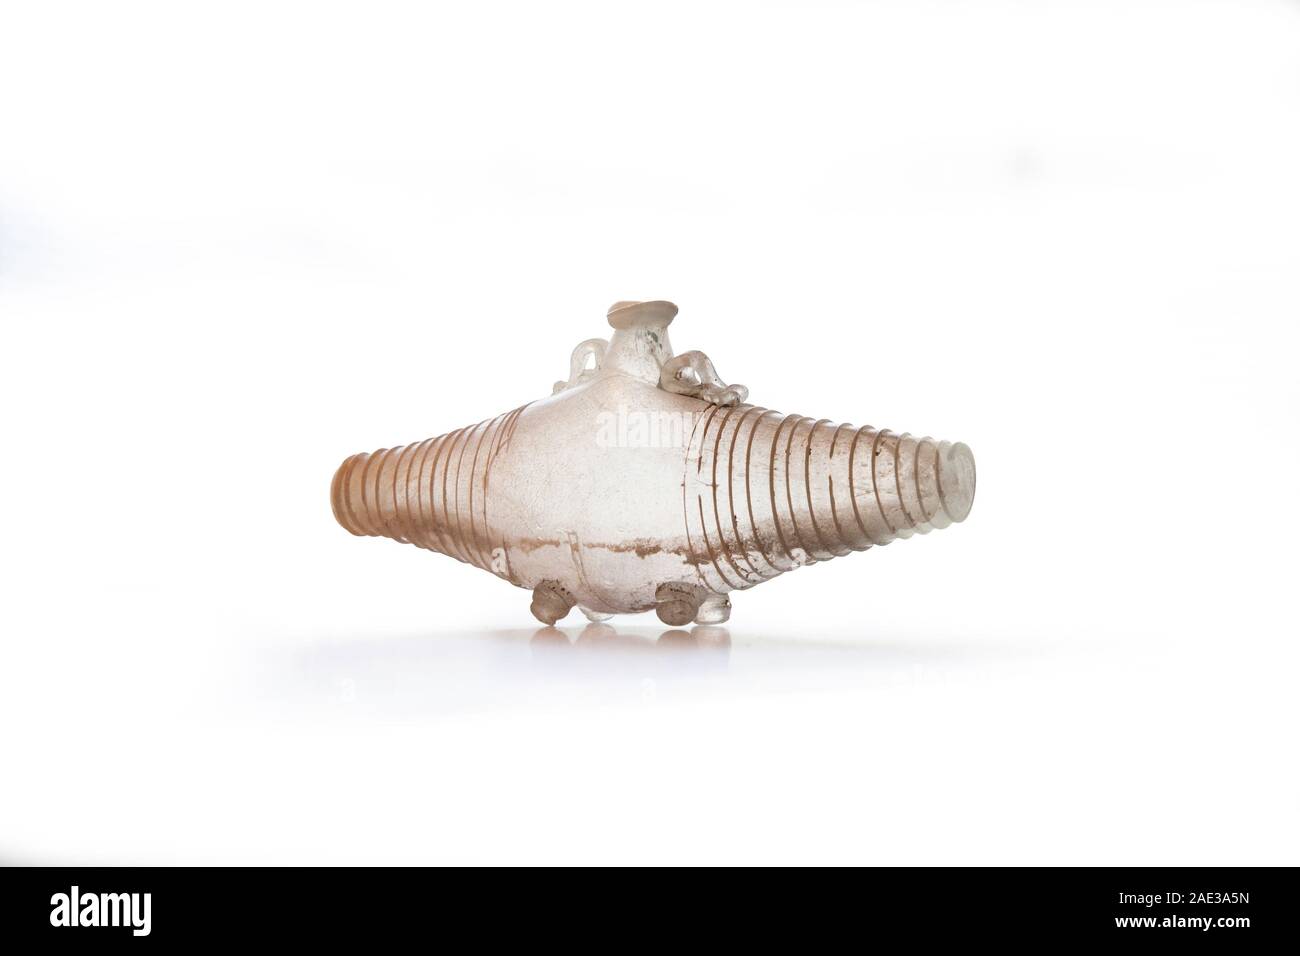 Antico romano caraffa di vetro a forma di botte con filo di vetro decor. Natural-vetro colorato del primo e del secondo secolo D.C. Percorso di clipping per la progettazione p Foto Stock